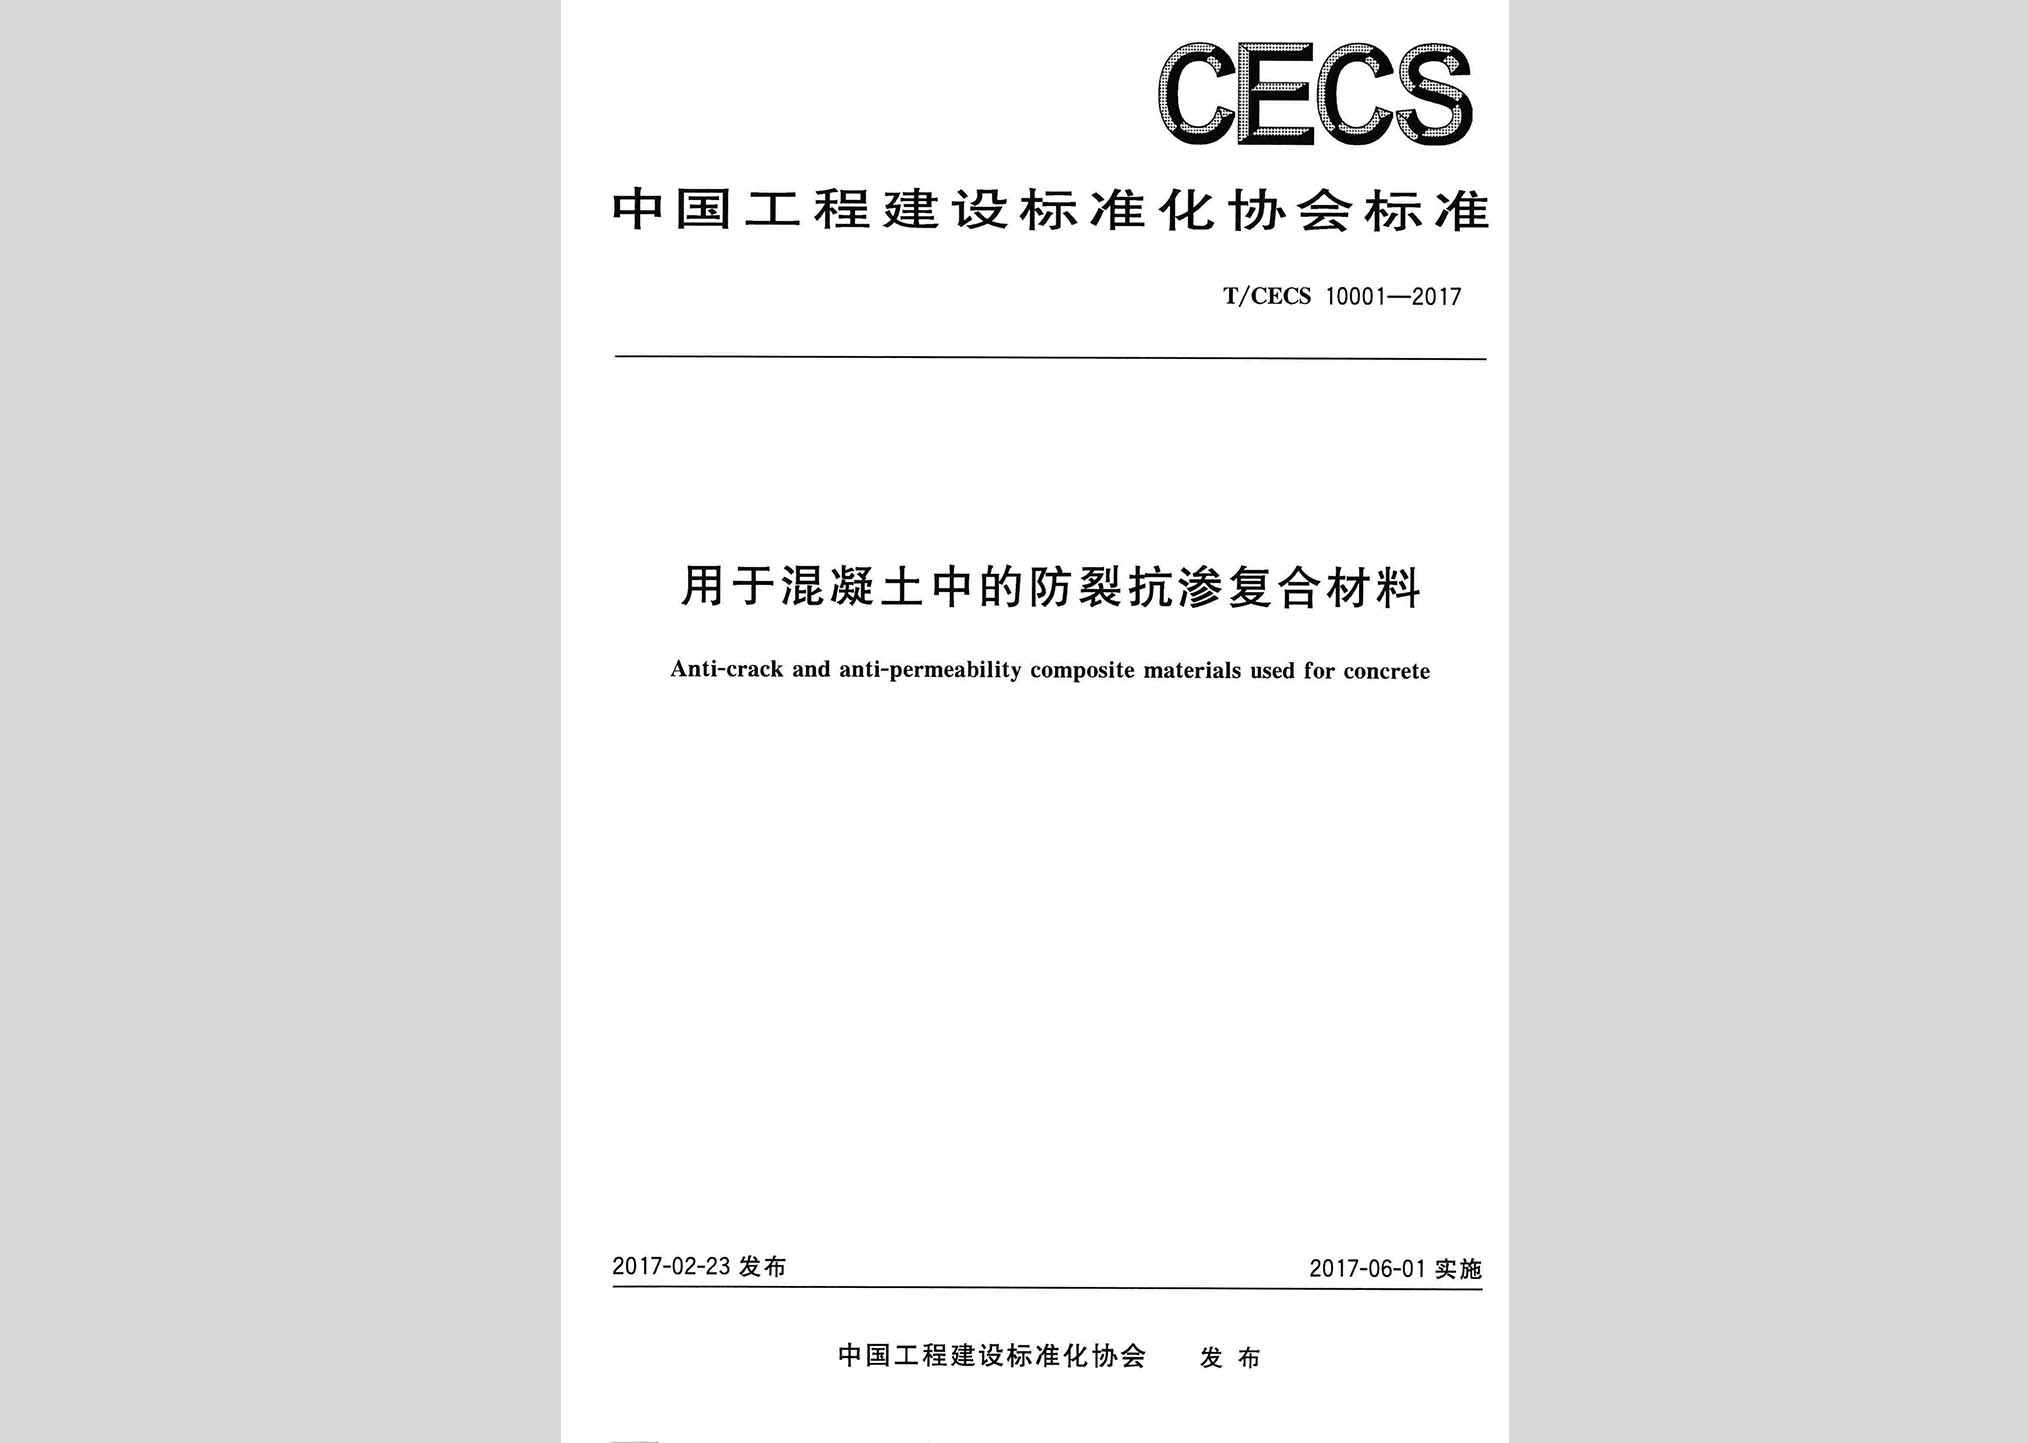 T/CECS10001-2017：用于混凝土中的防裂抗渗复合材料